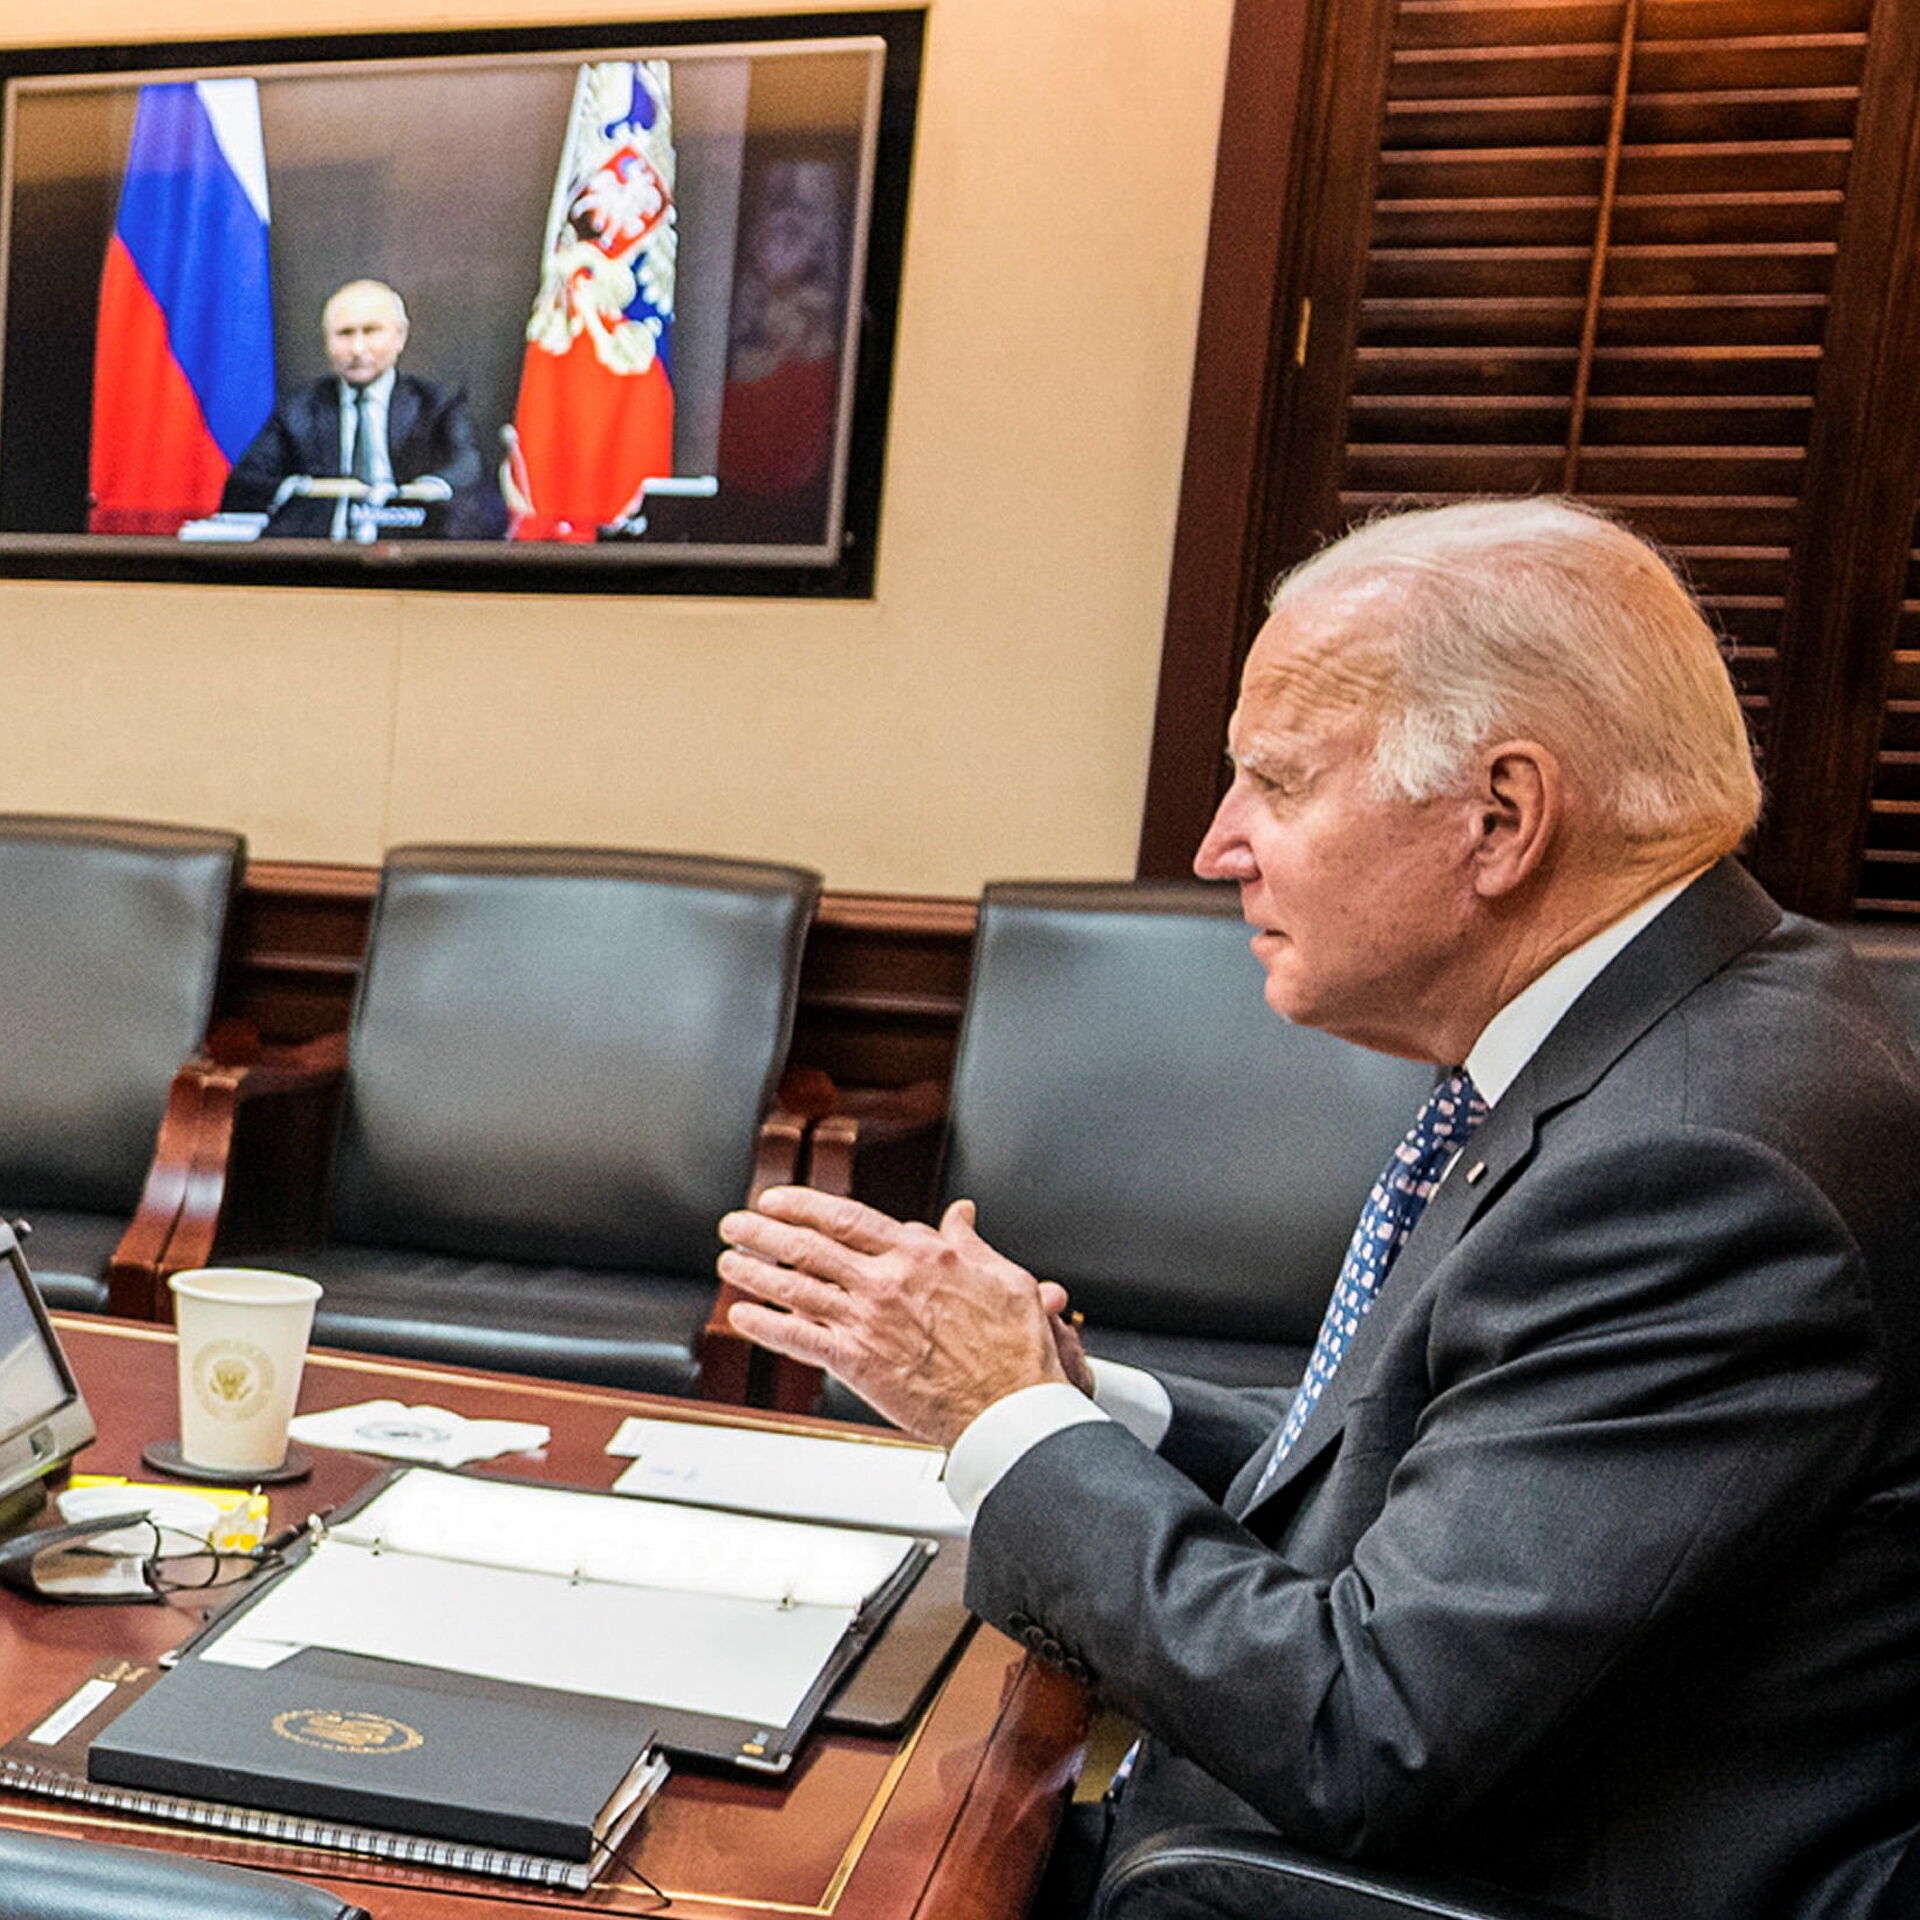 30 Dicembre 2021 – Telefonata di 50minuti tra Biden e Putin per raffreddare crisi ucraina. Olanda, a rischio forniture gas alle imprese. Sudan, continuano le repressioni del regime. Siria, tensioni Assad con Iran e i suoi alleati